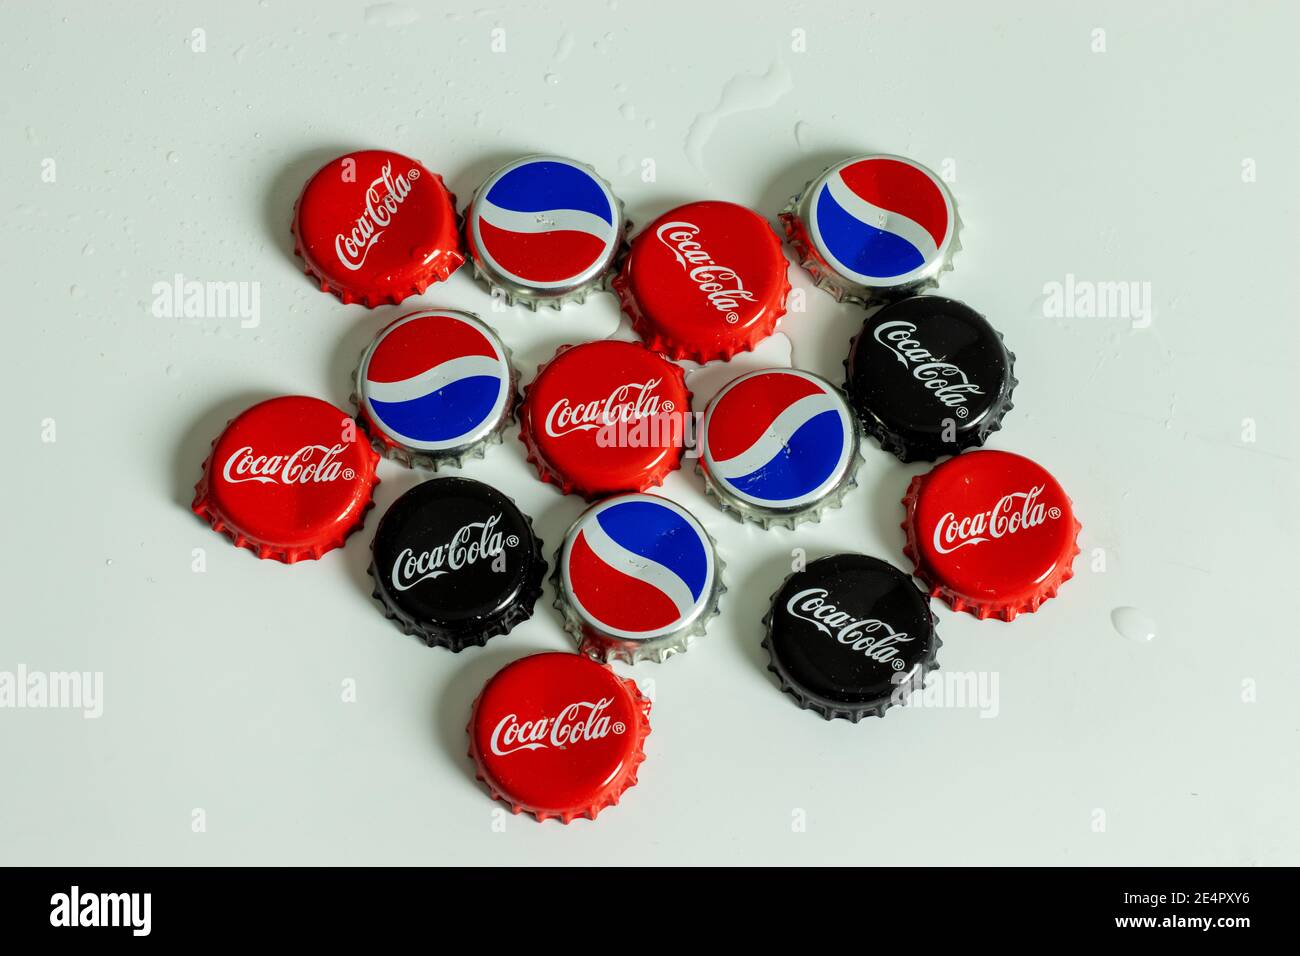 Nueva York, EE.UU. - 1 de enero de 2021: Vista superior de la tapa de la botella de Pepsi y Coca-Cola con el logotipo. Marca Coke, editorial ilustrativa Foto de stock